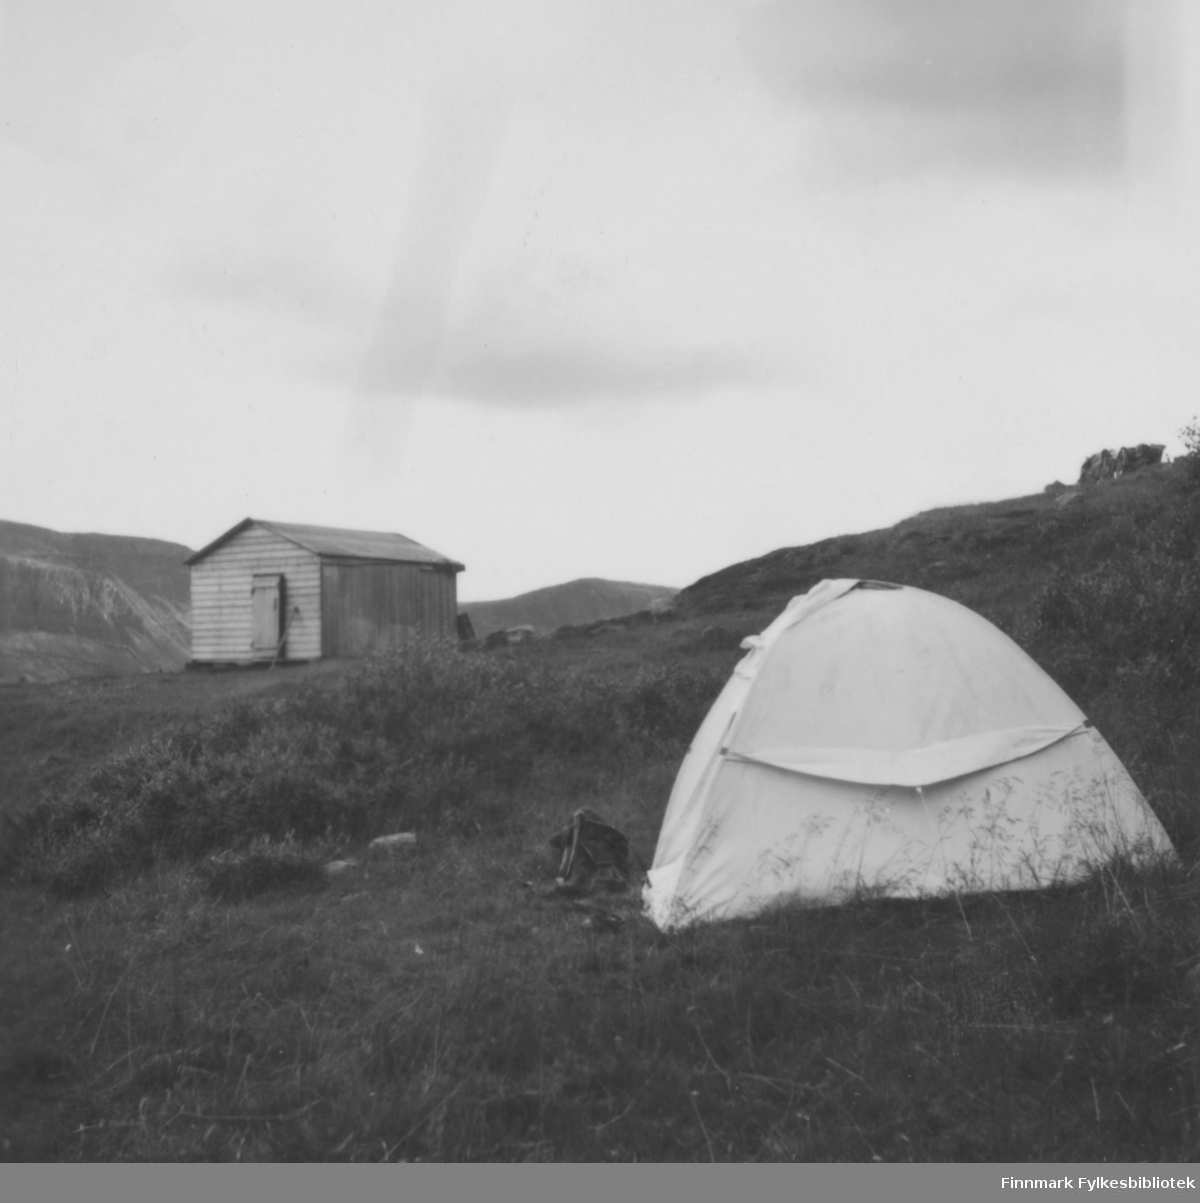 Ebeltofts telt slått opp på ukjent sted, kanskje i Finnmark. I bakgrunnen ei hytte, utenfor teltet en ryggsekk